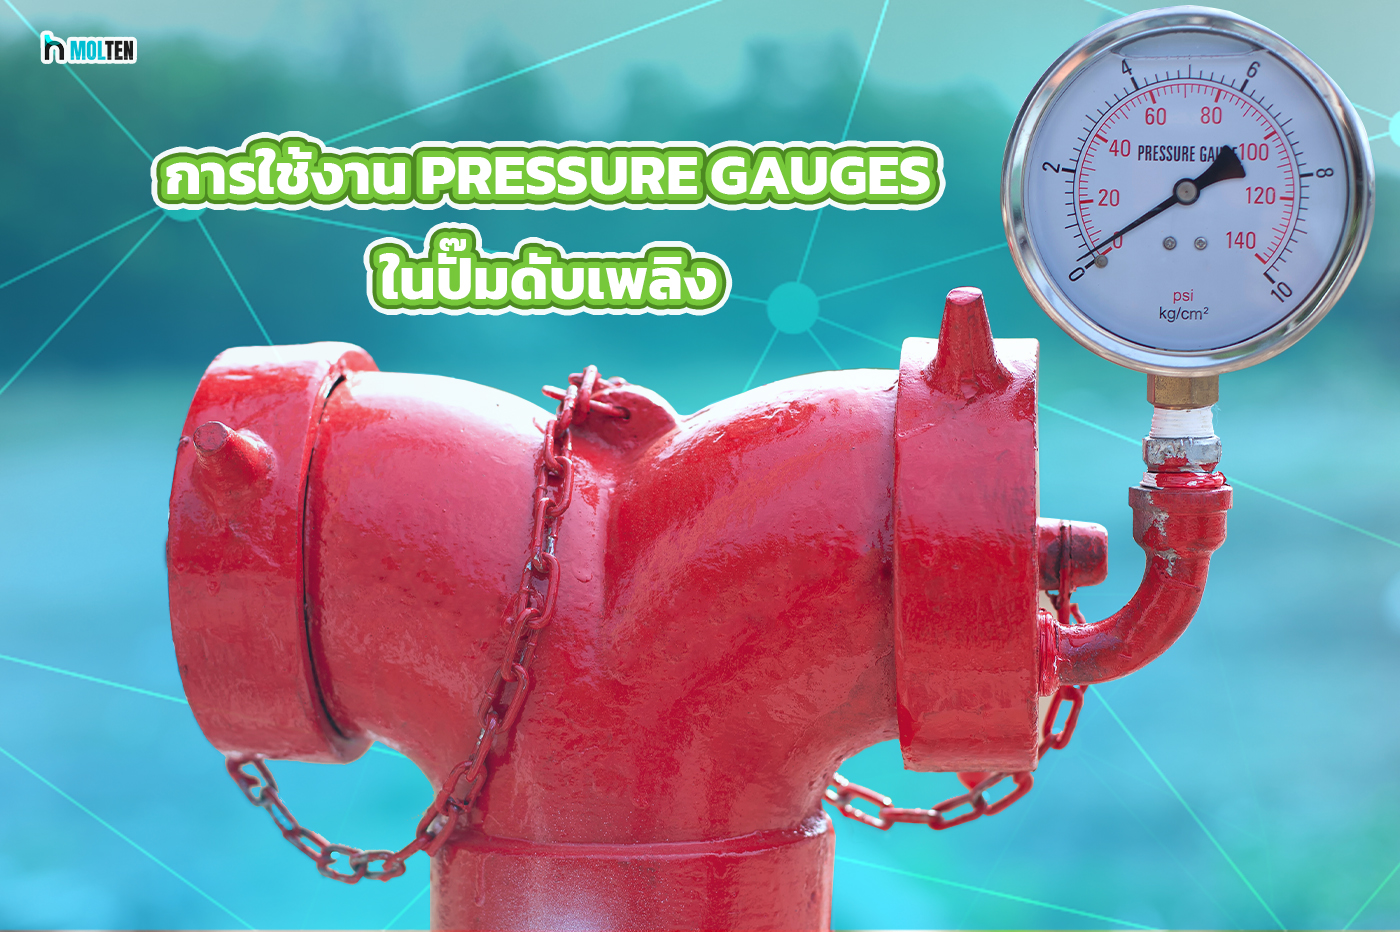 3. การใช้งาน Pressure Gauges ในปั๊มดับเพลิง